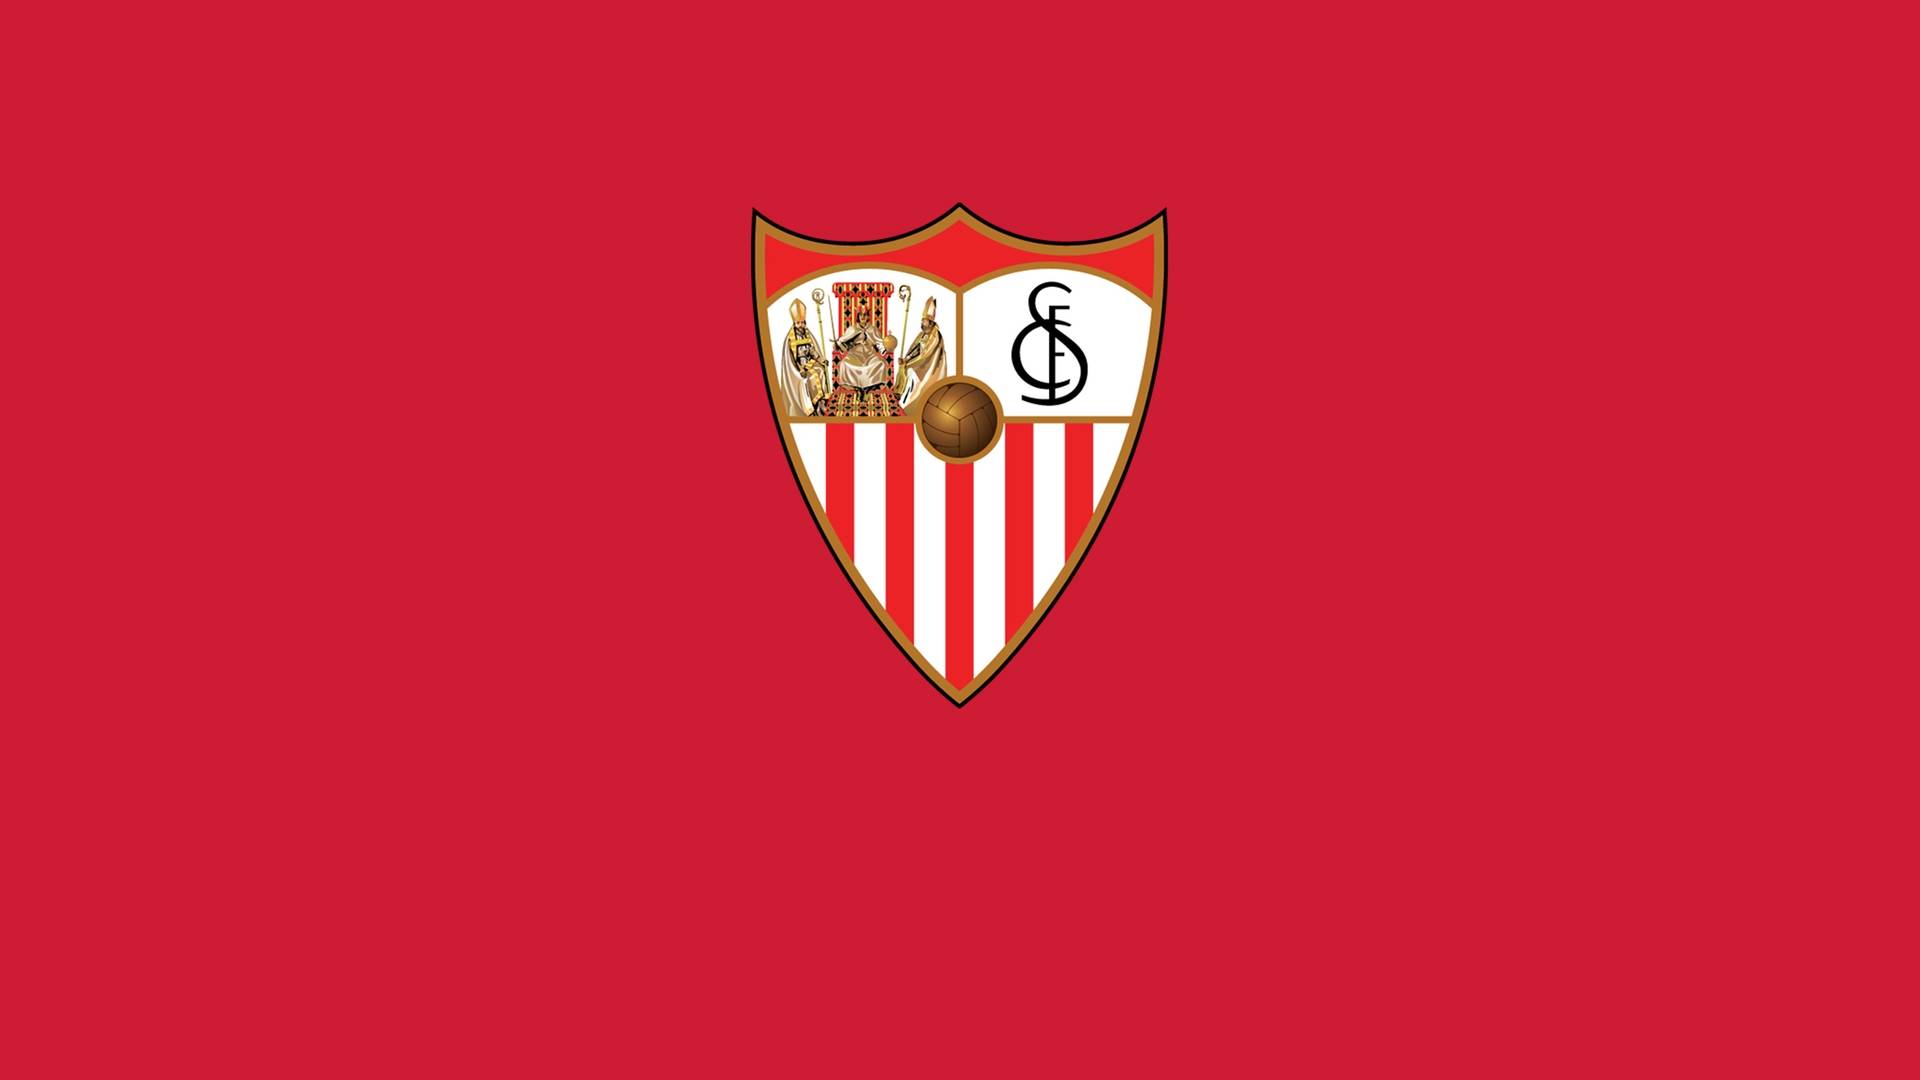 encima gastos generales Roux 🔴 Adelantan el once del Sevilla FC en 'Canal Sur Radio' - Ficherio